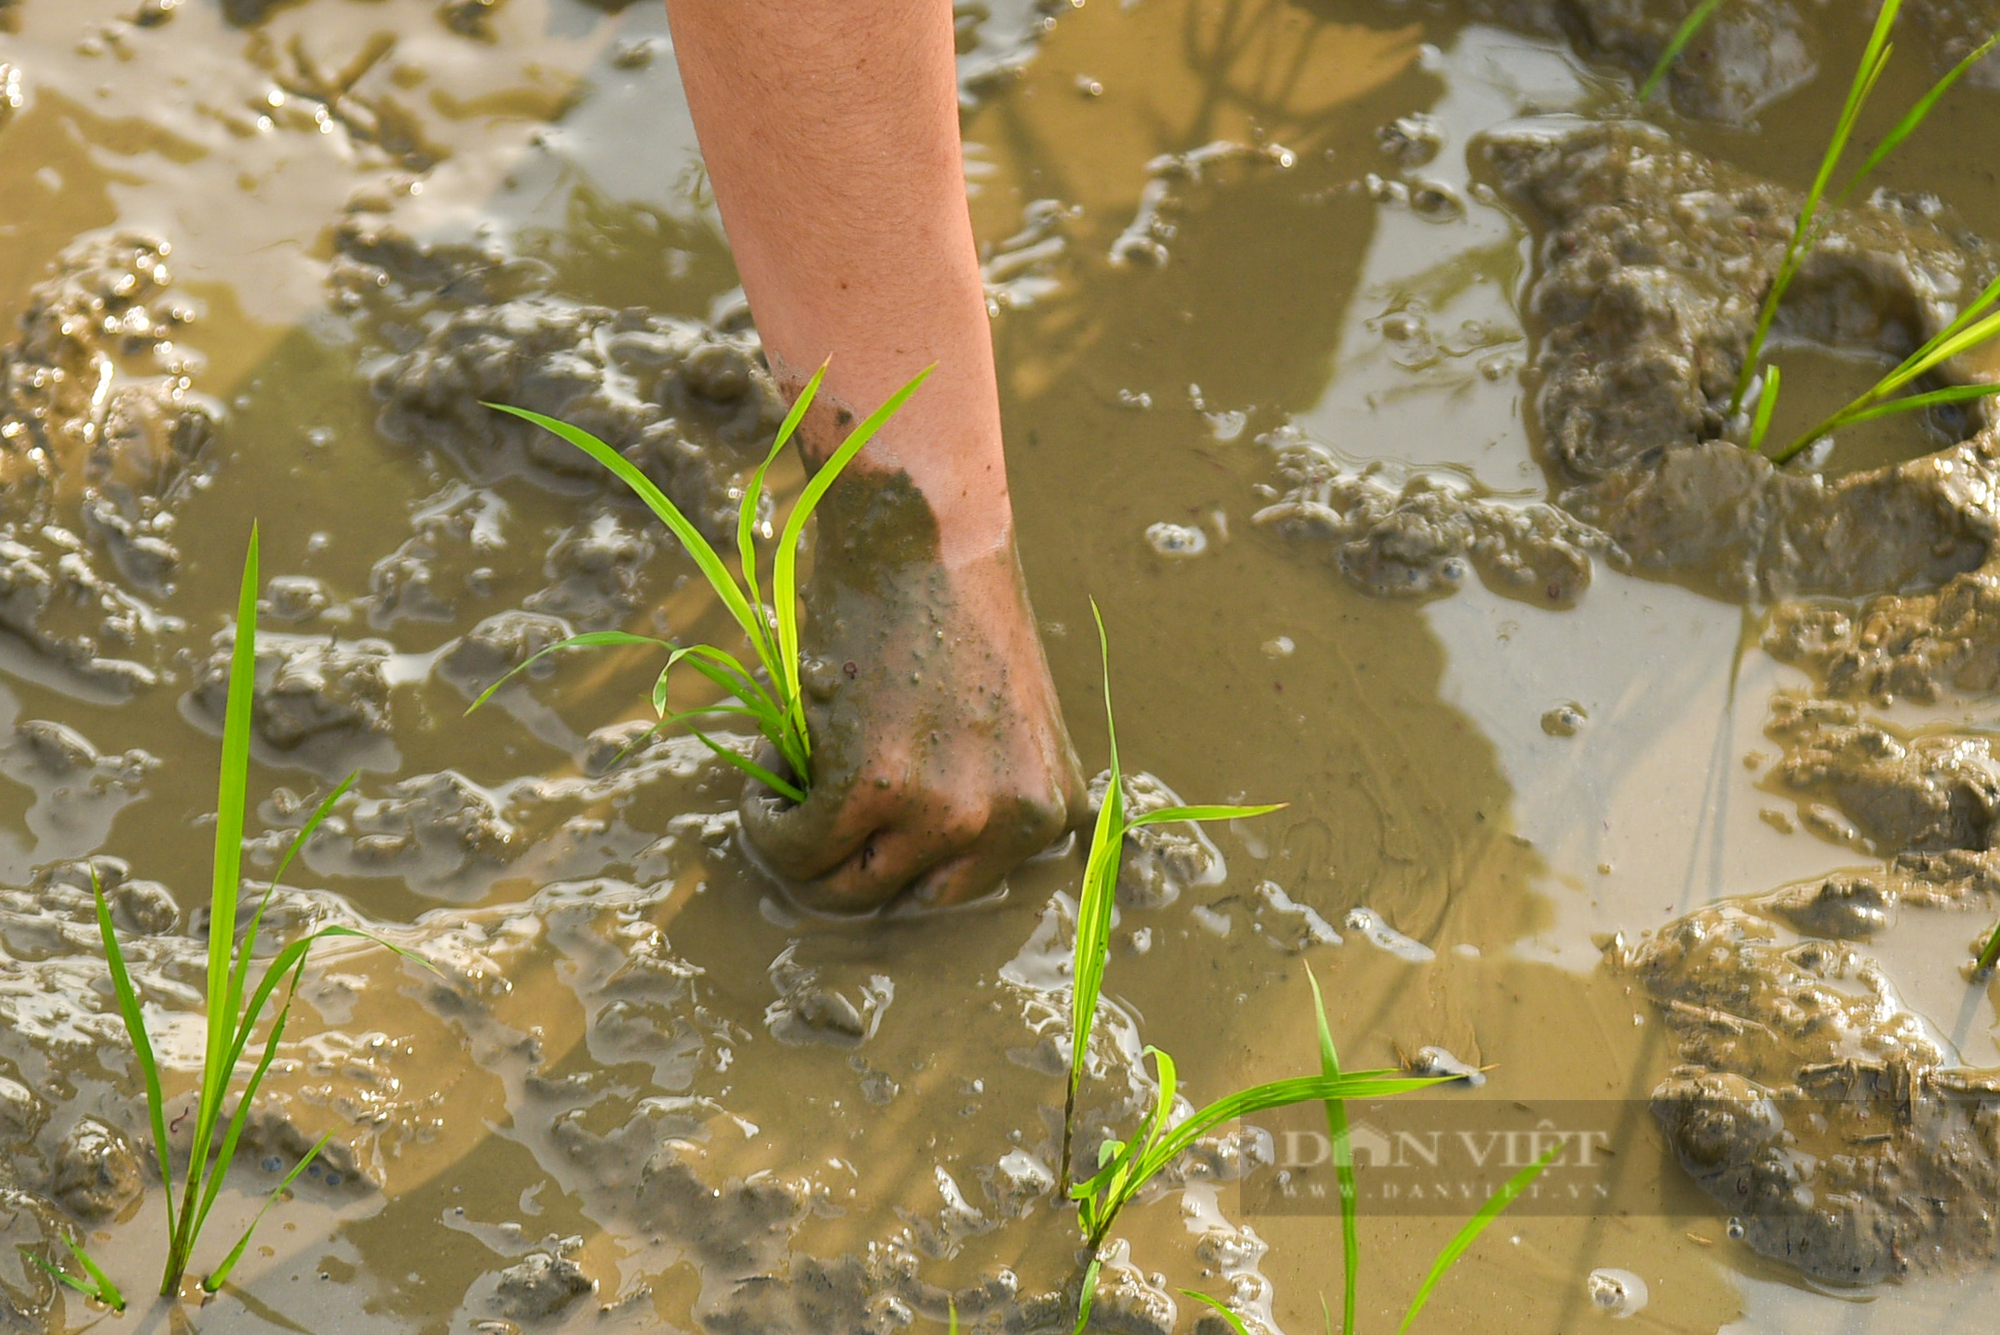 Hình ảnh Công an Thủ đô bì bõm lội ruộng giúp dân cấy lúa vụ Chiêm Xuân - Ảnh 8.